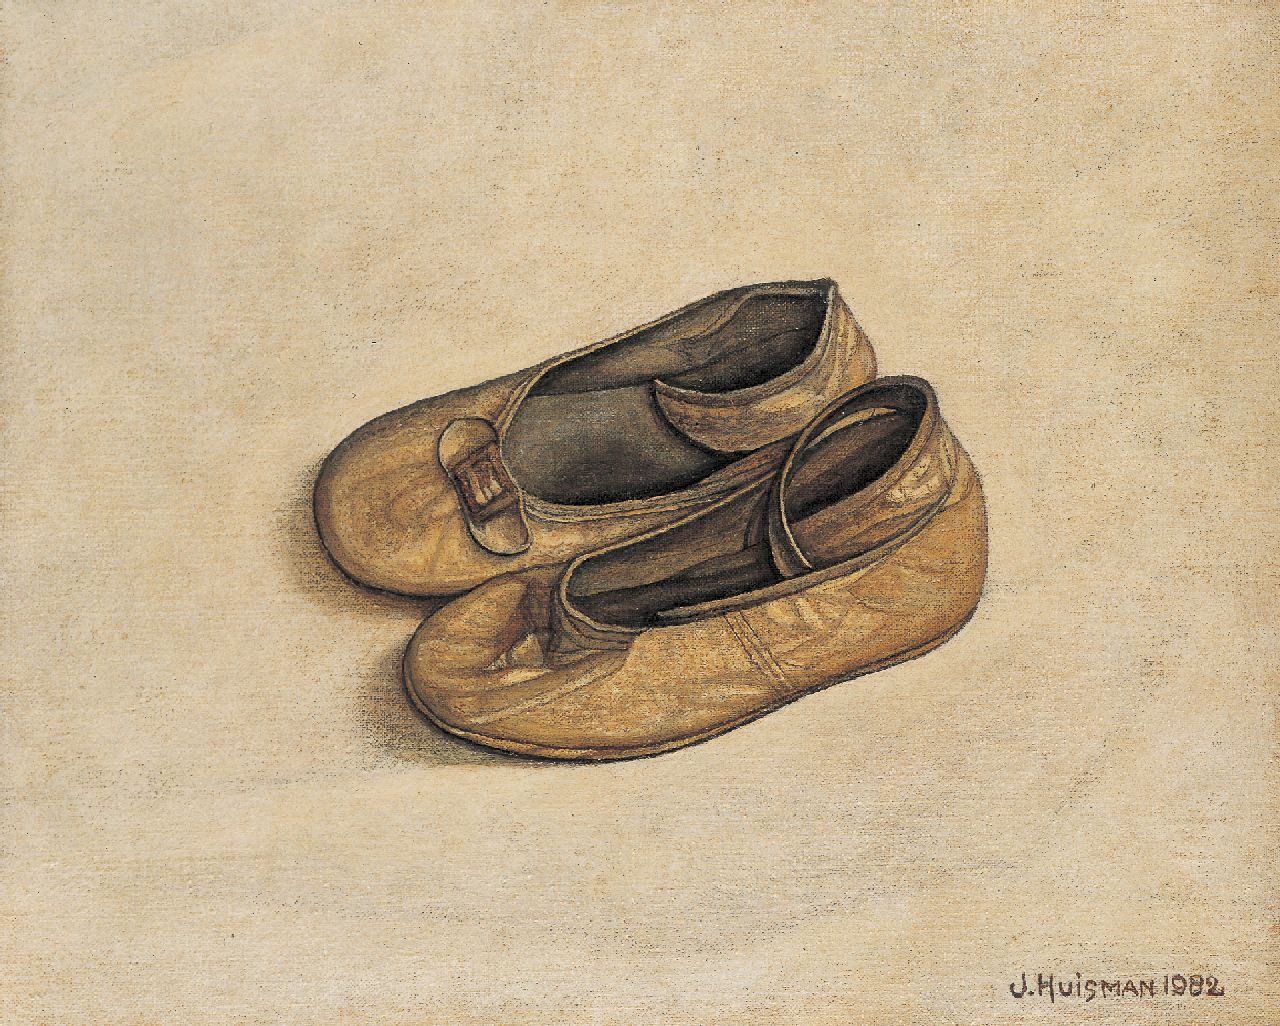 Jopie Huisman | Shoes, Öl auf Leinwand, 20,0 x 25,0 cm, signed l.r. und dated 1982